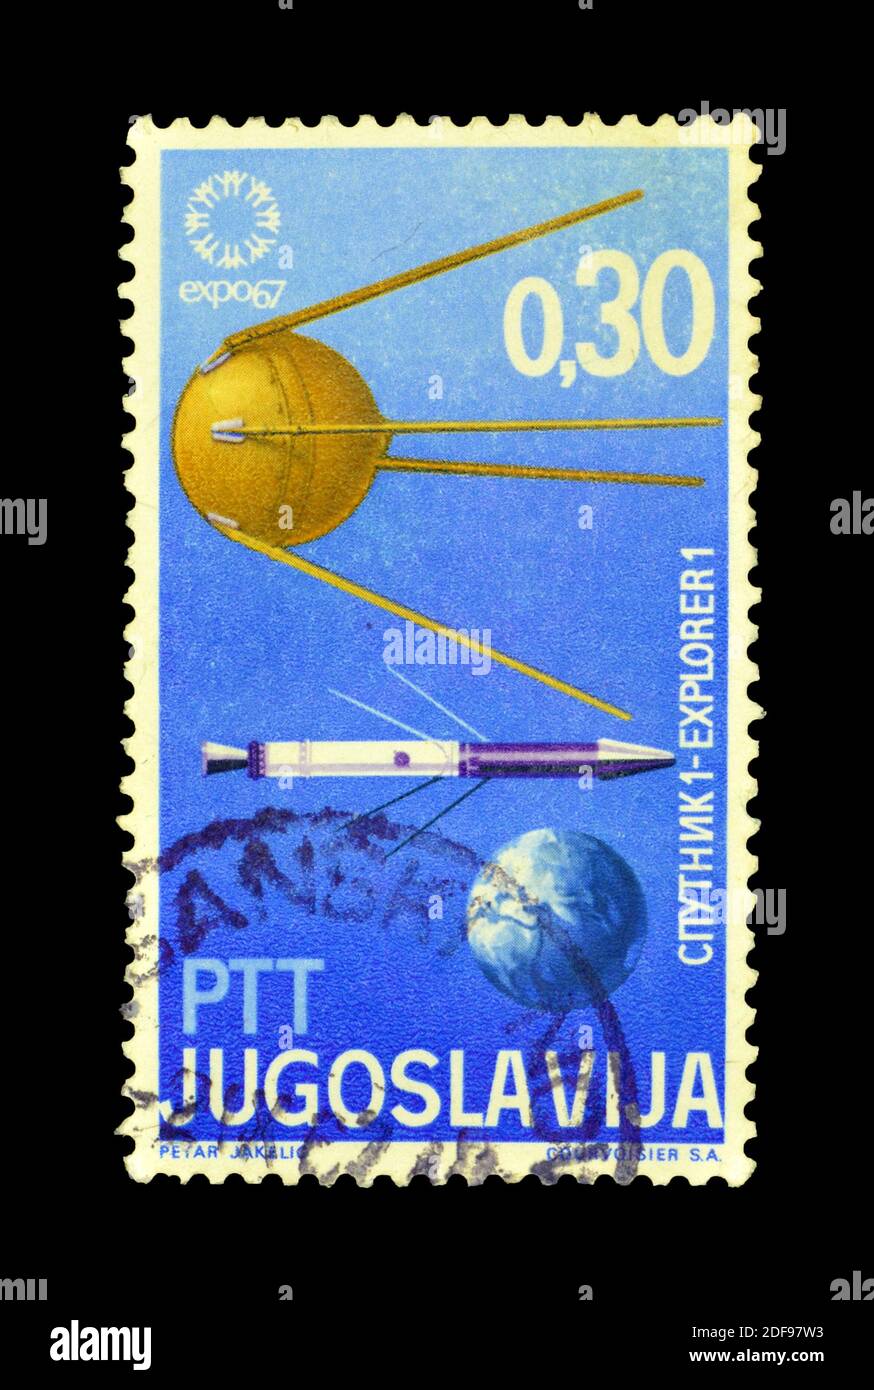 Abgesagte Briefmarke gedruckt von Jugoslawien, die Satelliten Sputnik 1, Explorer 1 und Erde zeigt, um 1967. Stockfoto